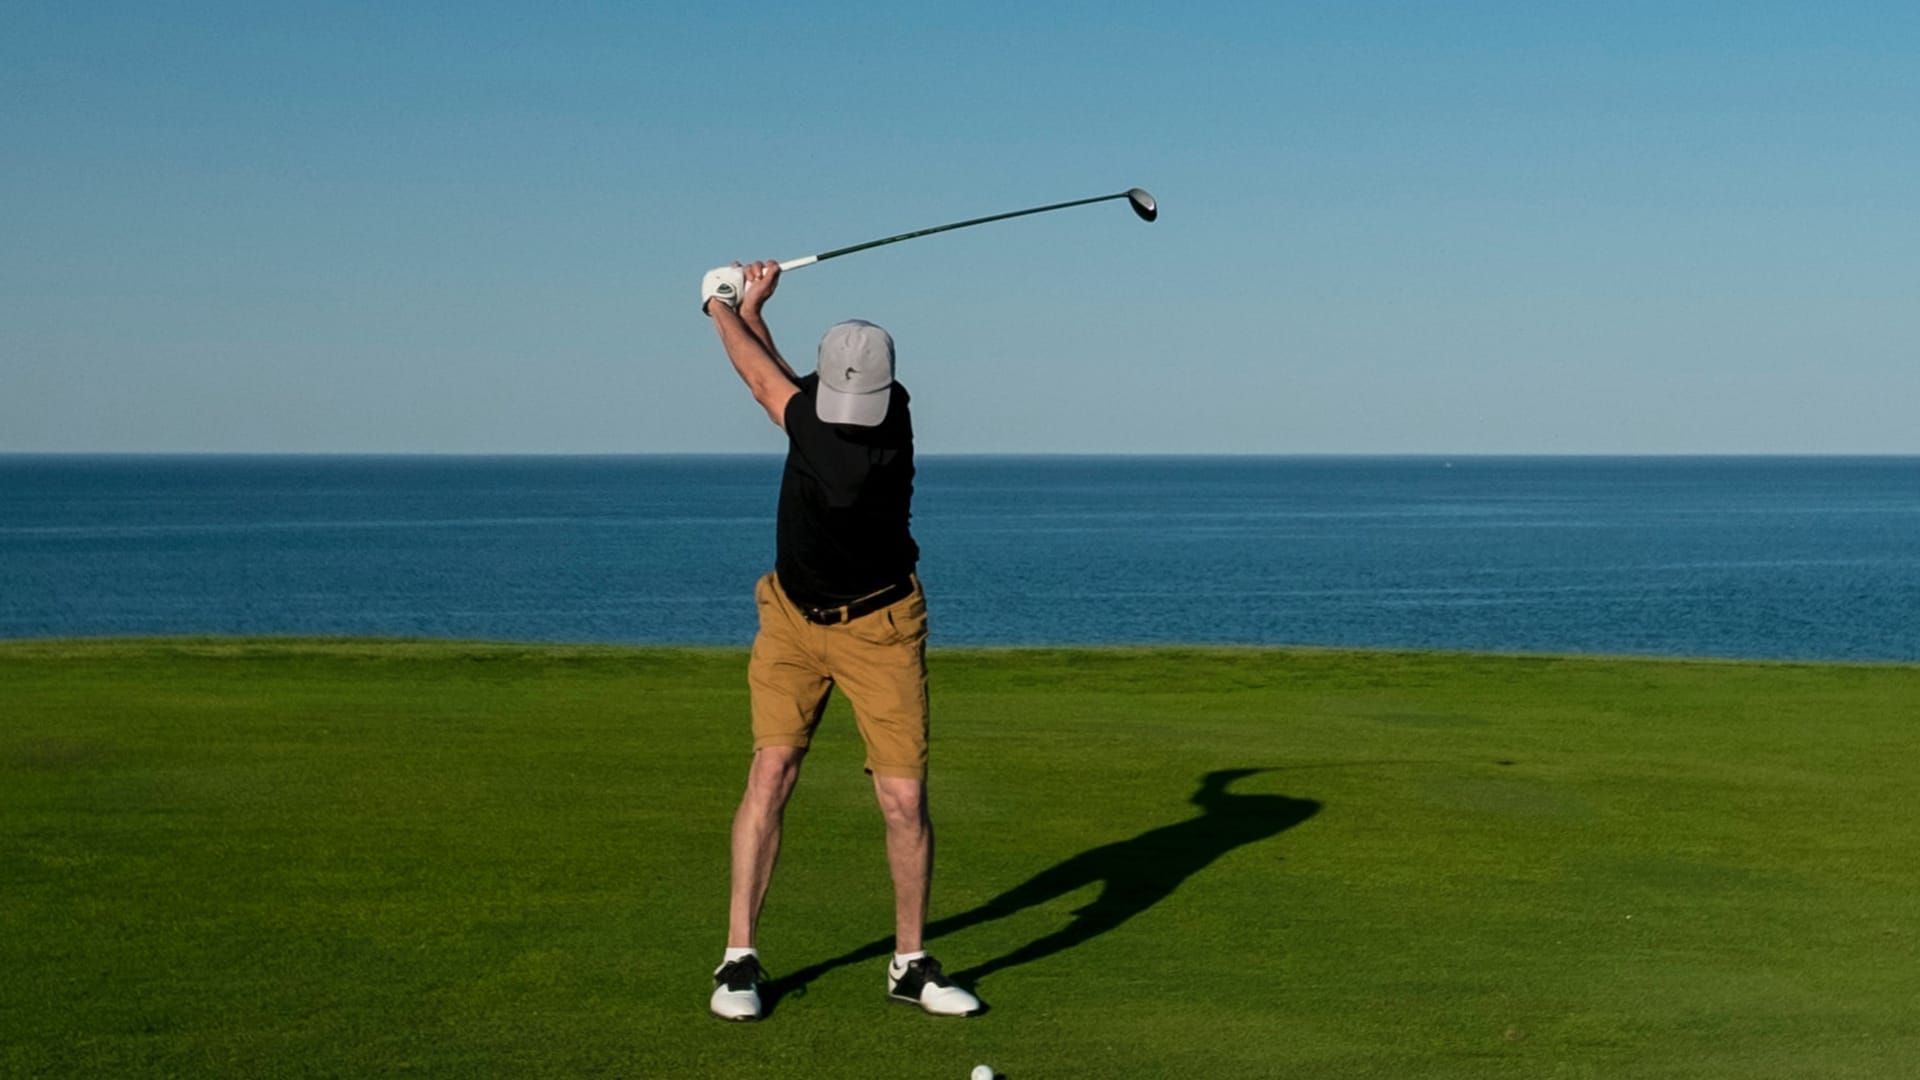 Ab wann ist man ein guter Golfer?